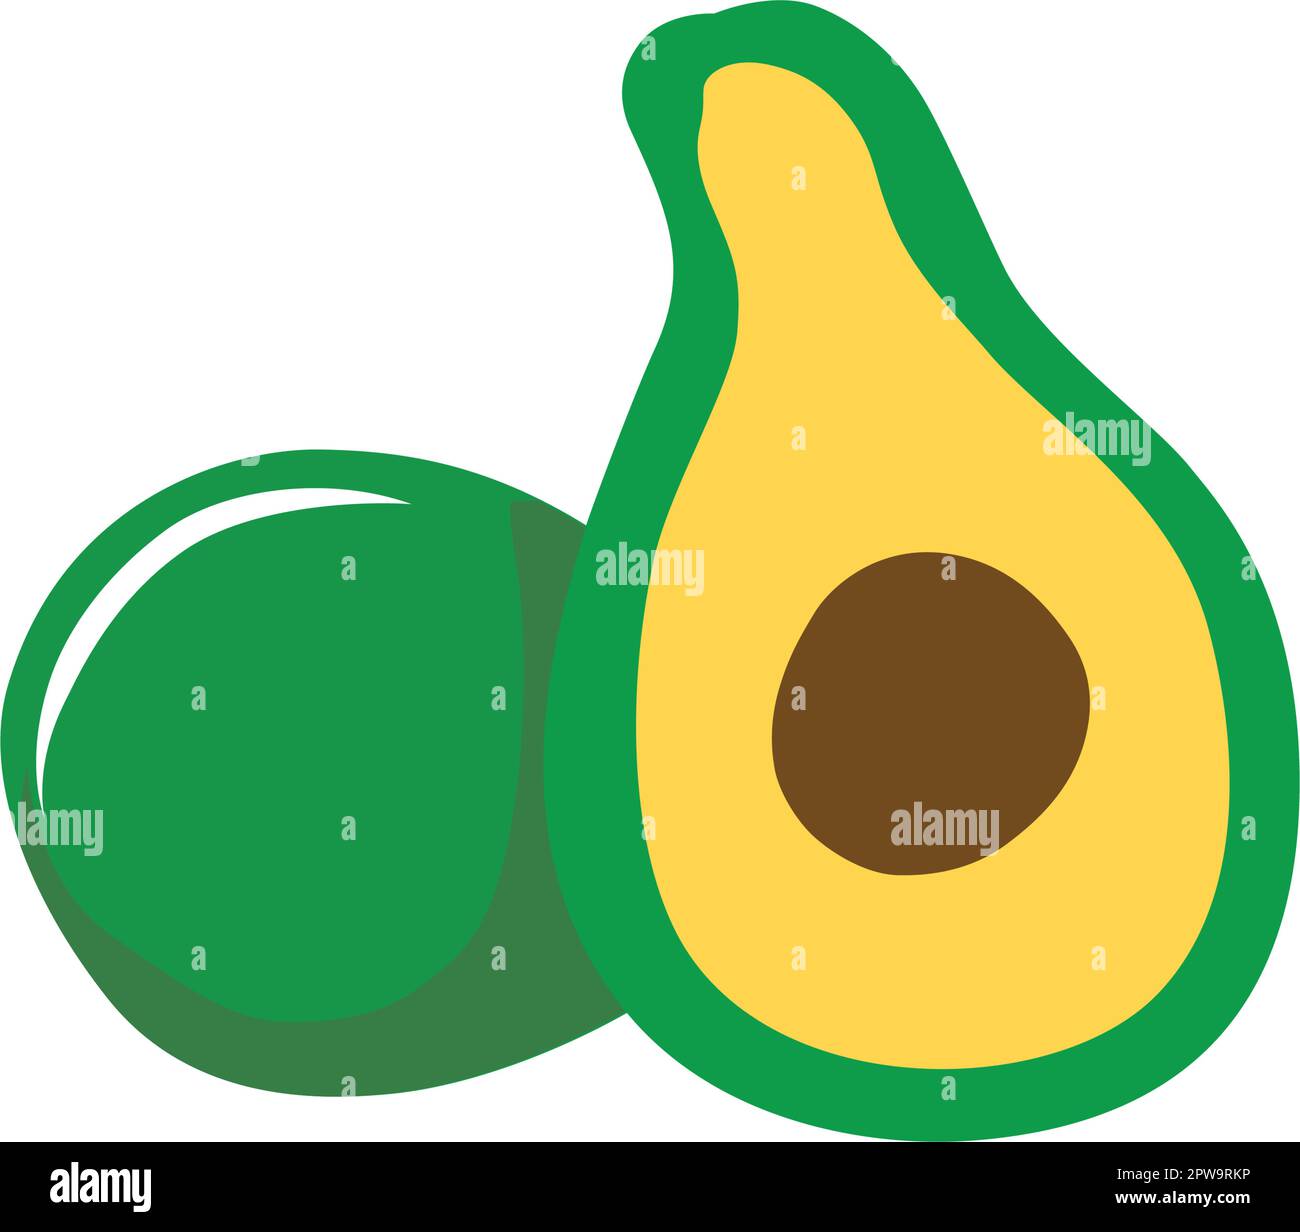 Vecteur d'illustration Avocado en tranches simples Illustration de Vecteur